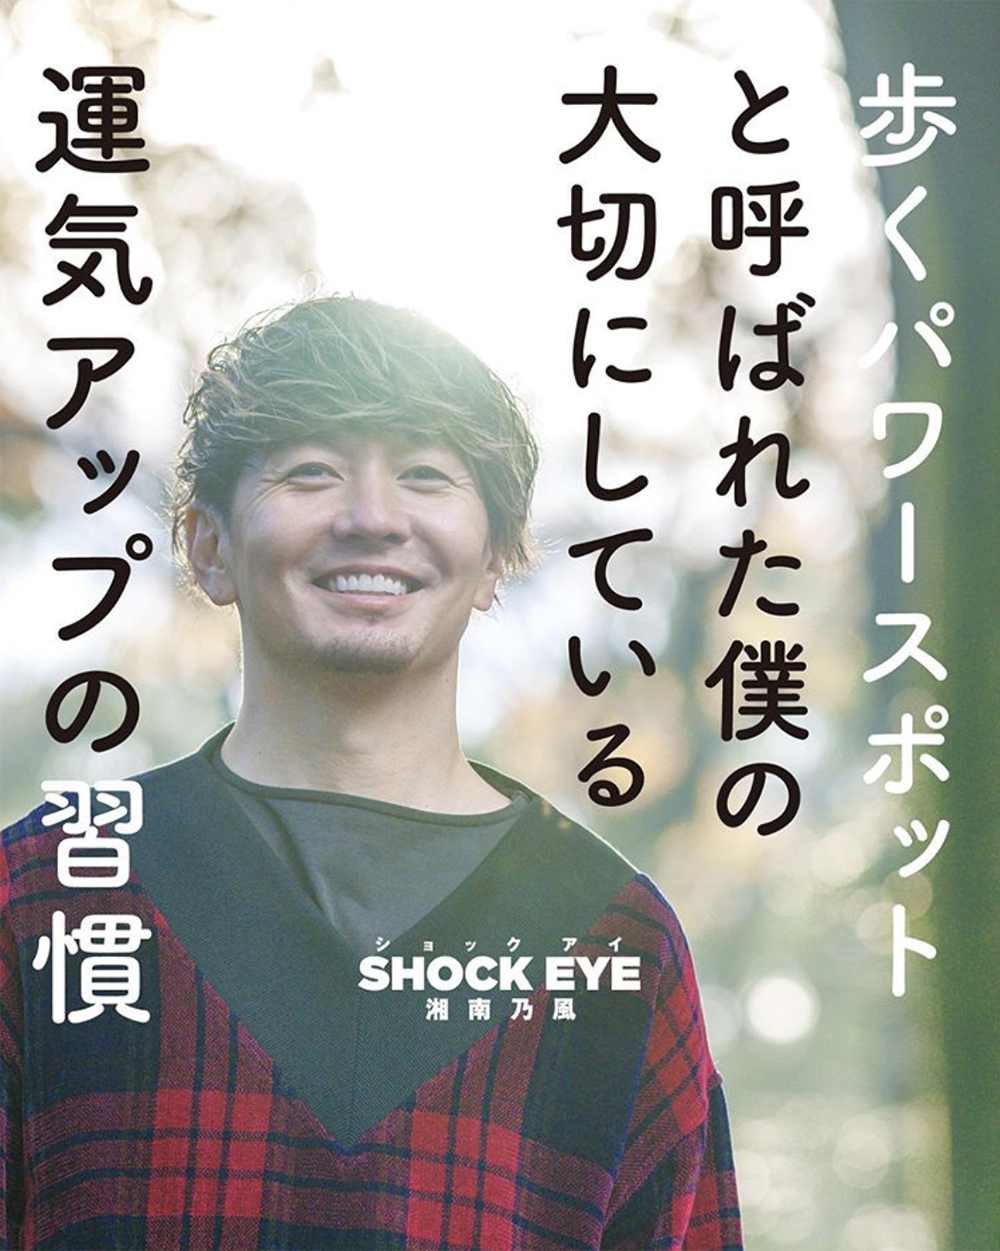 歩くパワースポット 湘南乃風 Shock Eyeさんが 運気アップ本第2弾を発売 バランスタイムズ サッカーのあるファッションライフ